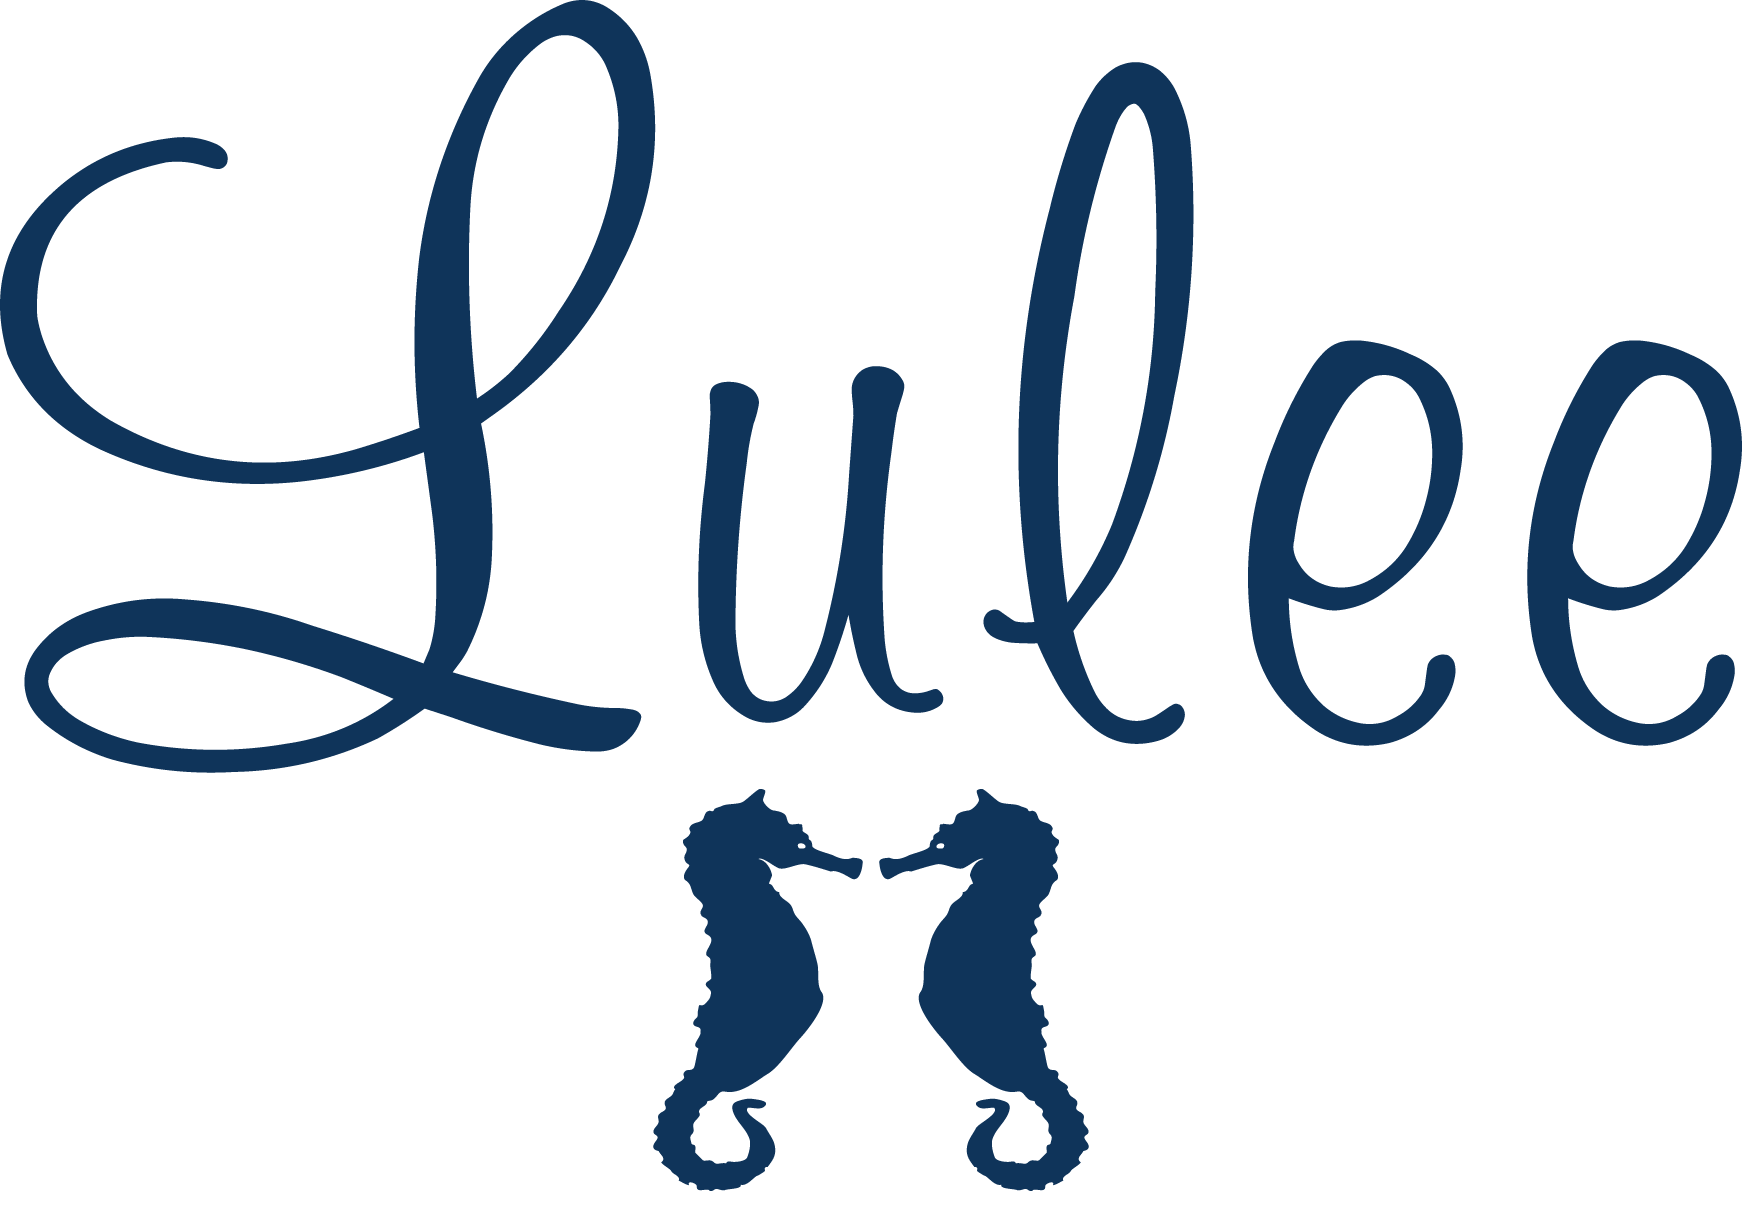 Lulee